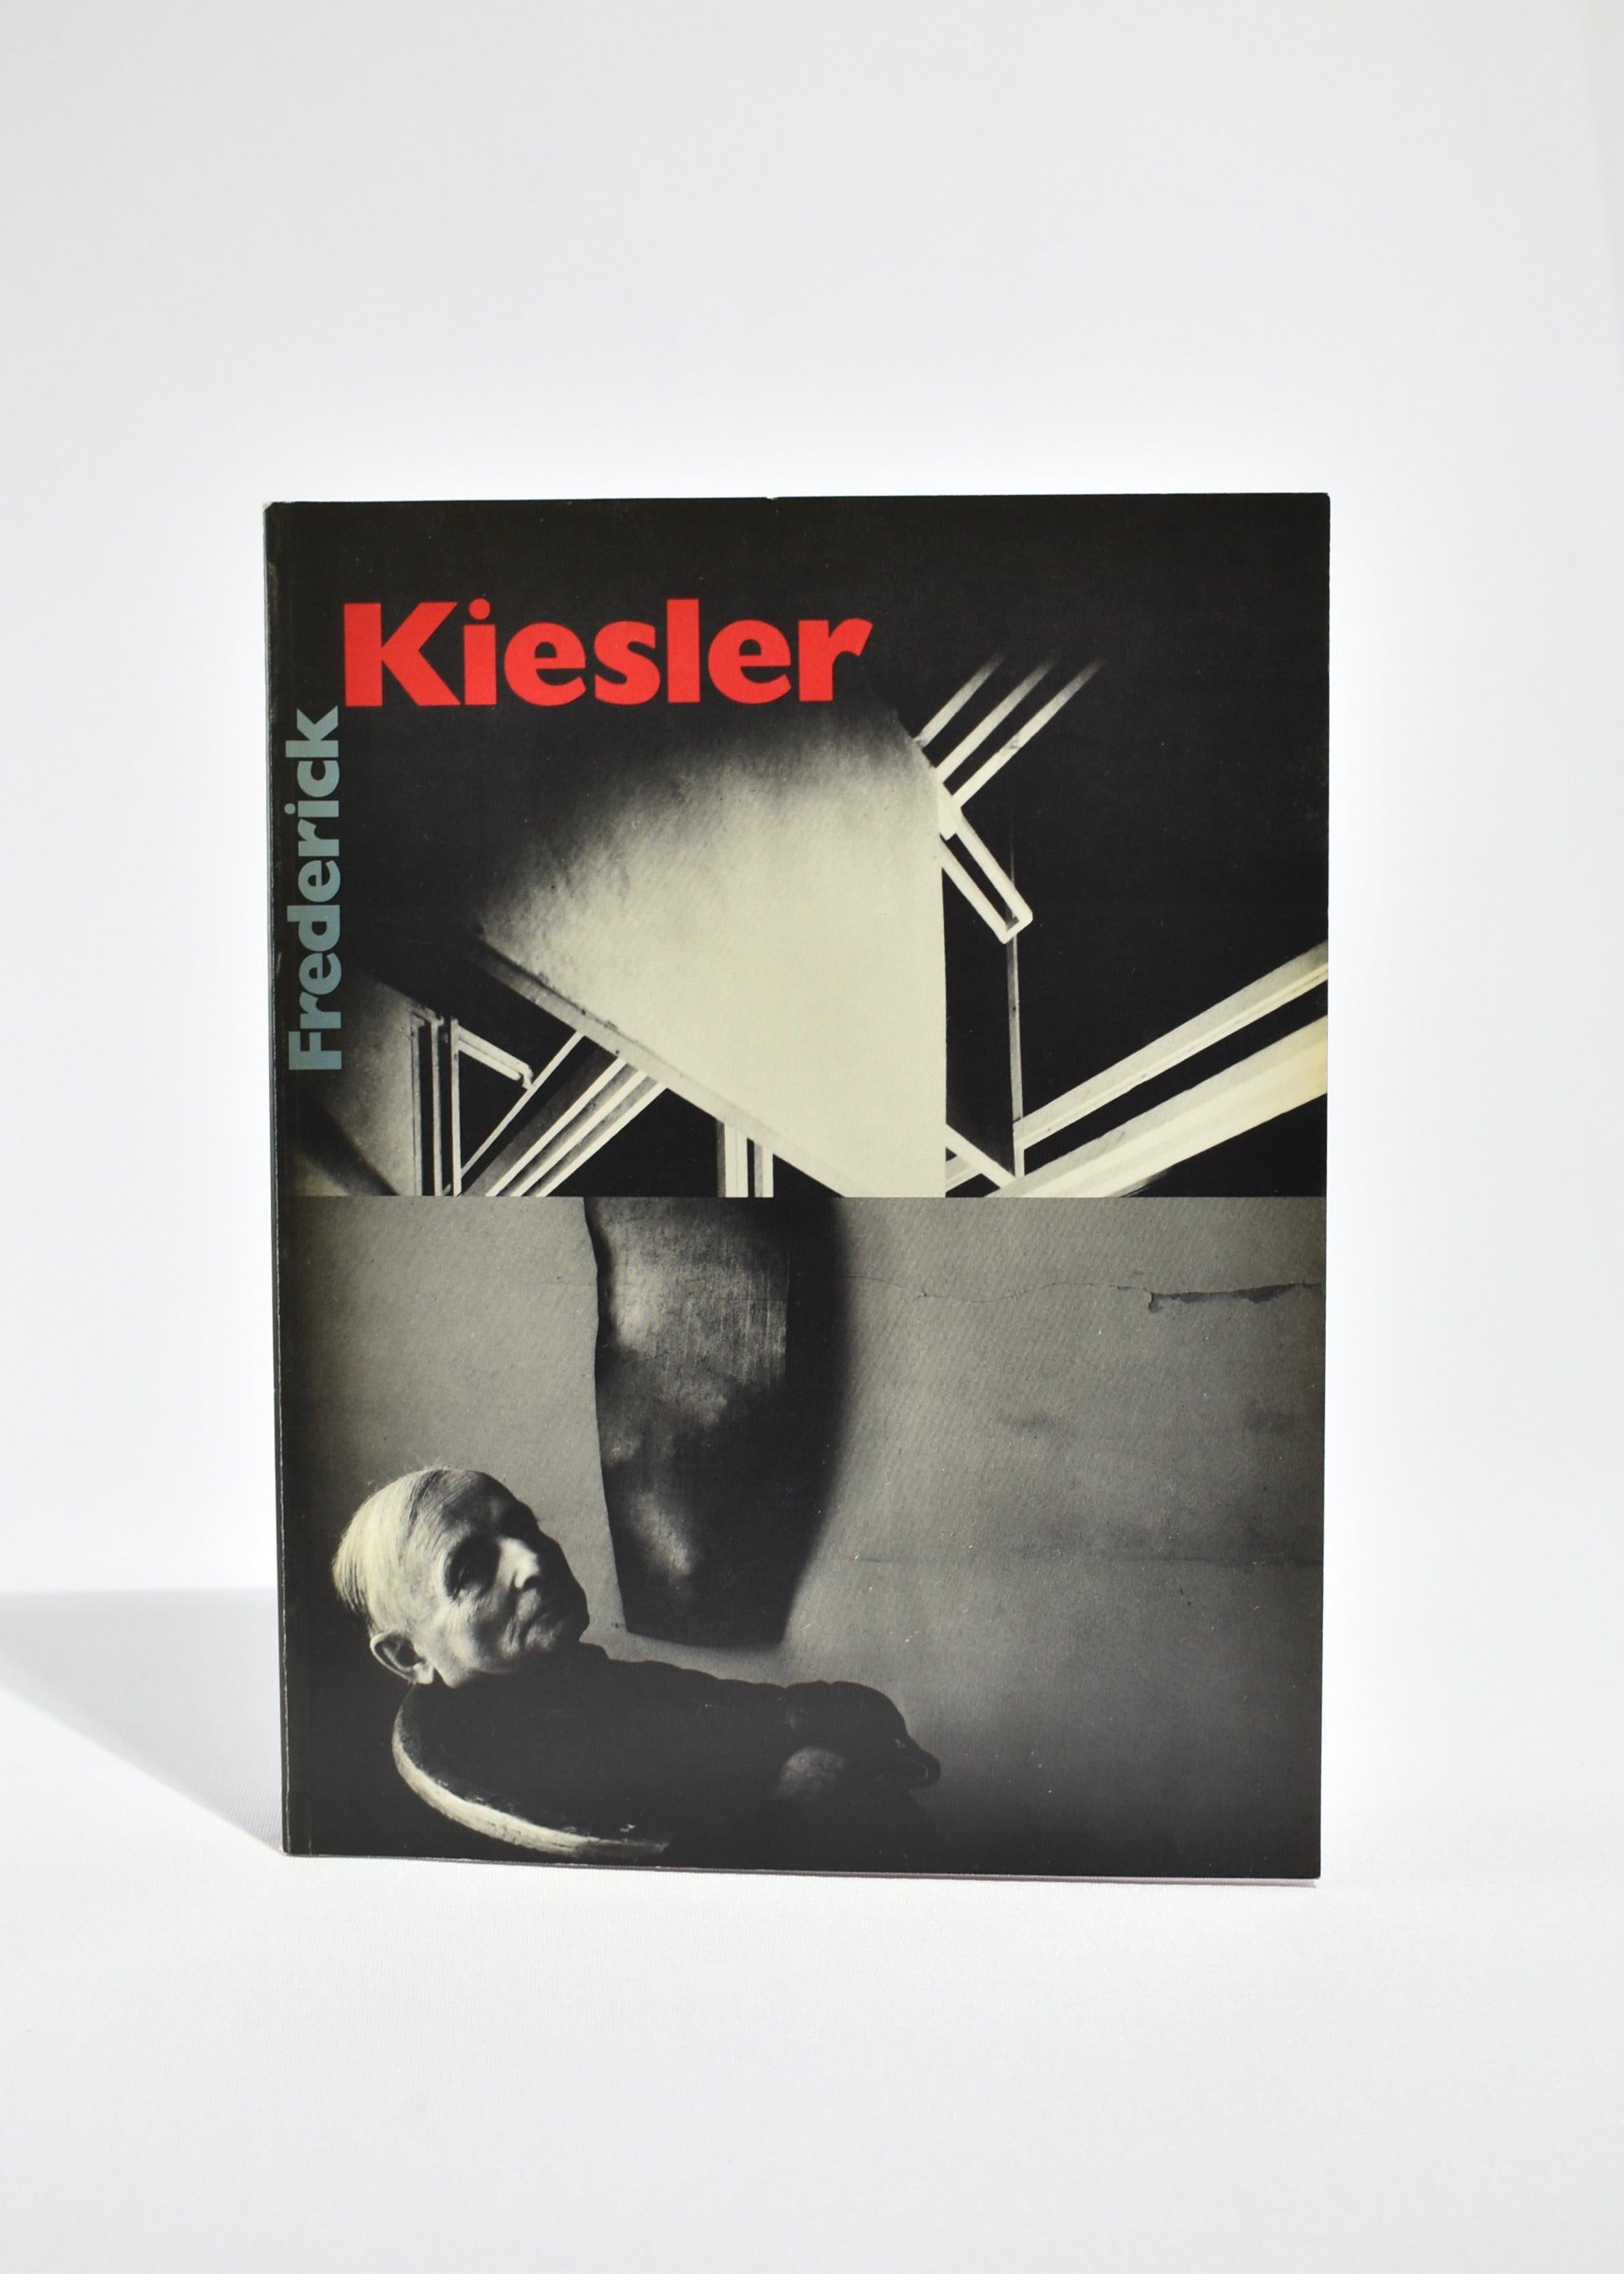 Livre de poche vintage présentant une rétrospective du travail de l'architecte et scénographe Frederick Kiesler. Par Lisa Phillips, publié en 1989. 1ère édition, 170 pages.

